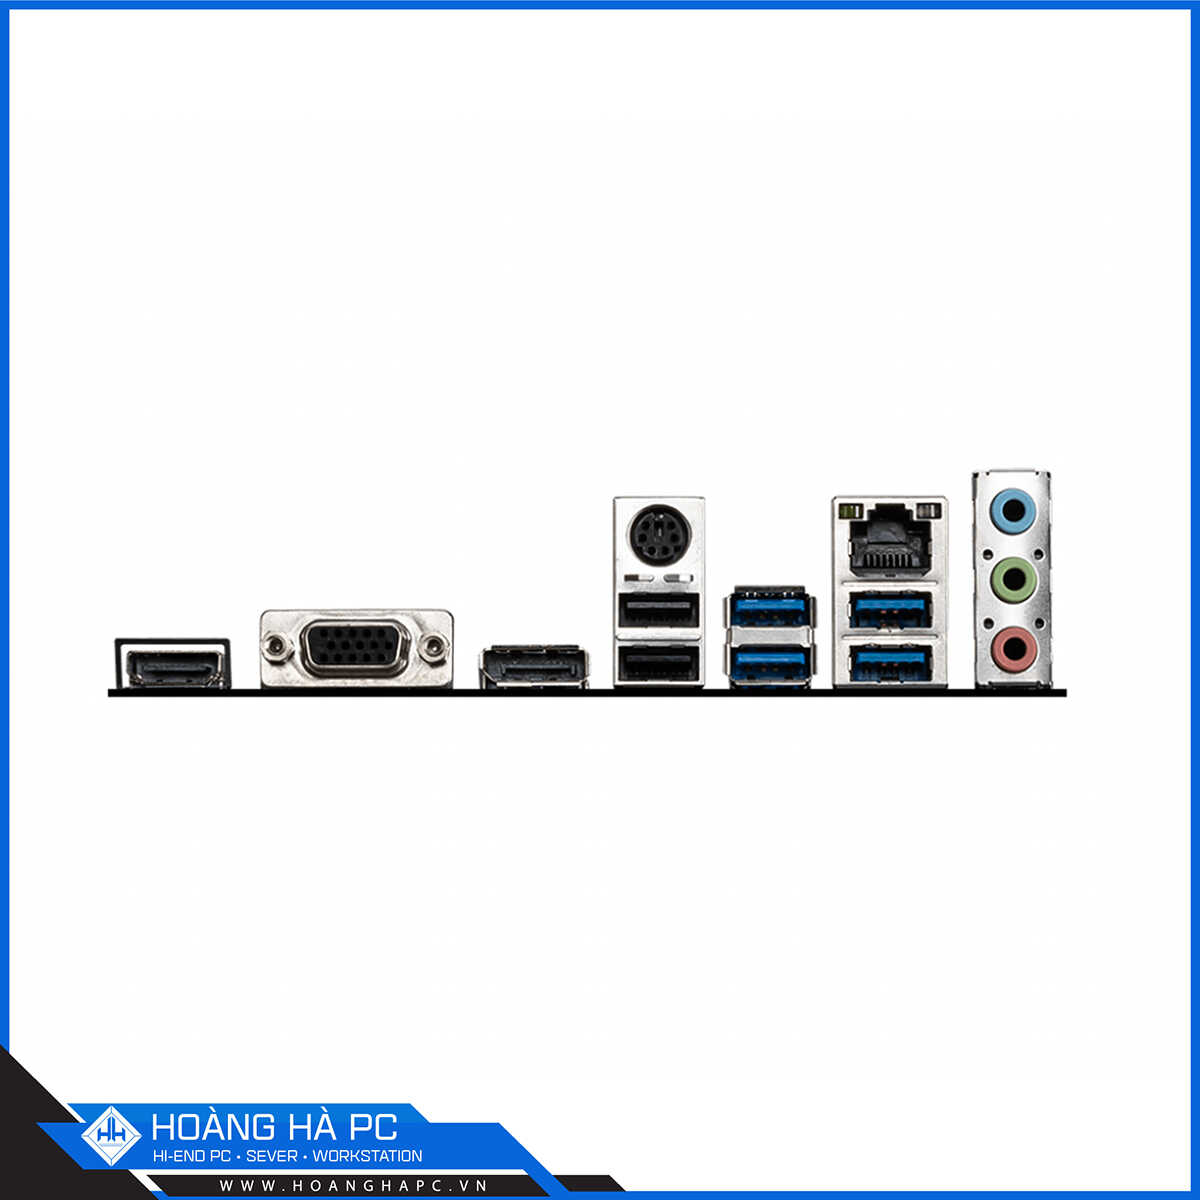 Mainboard MSI B560M PRO (Intel B560, LGA 1200, m-ATX, 2 khe Ram DDR4)